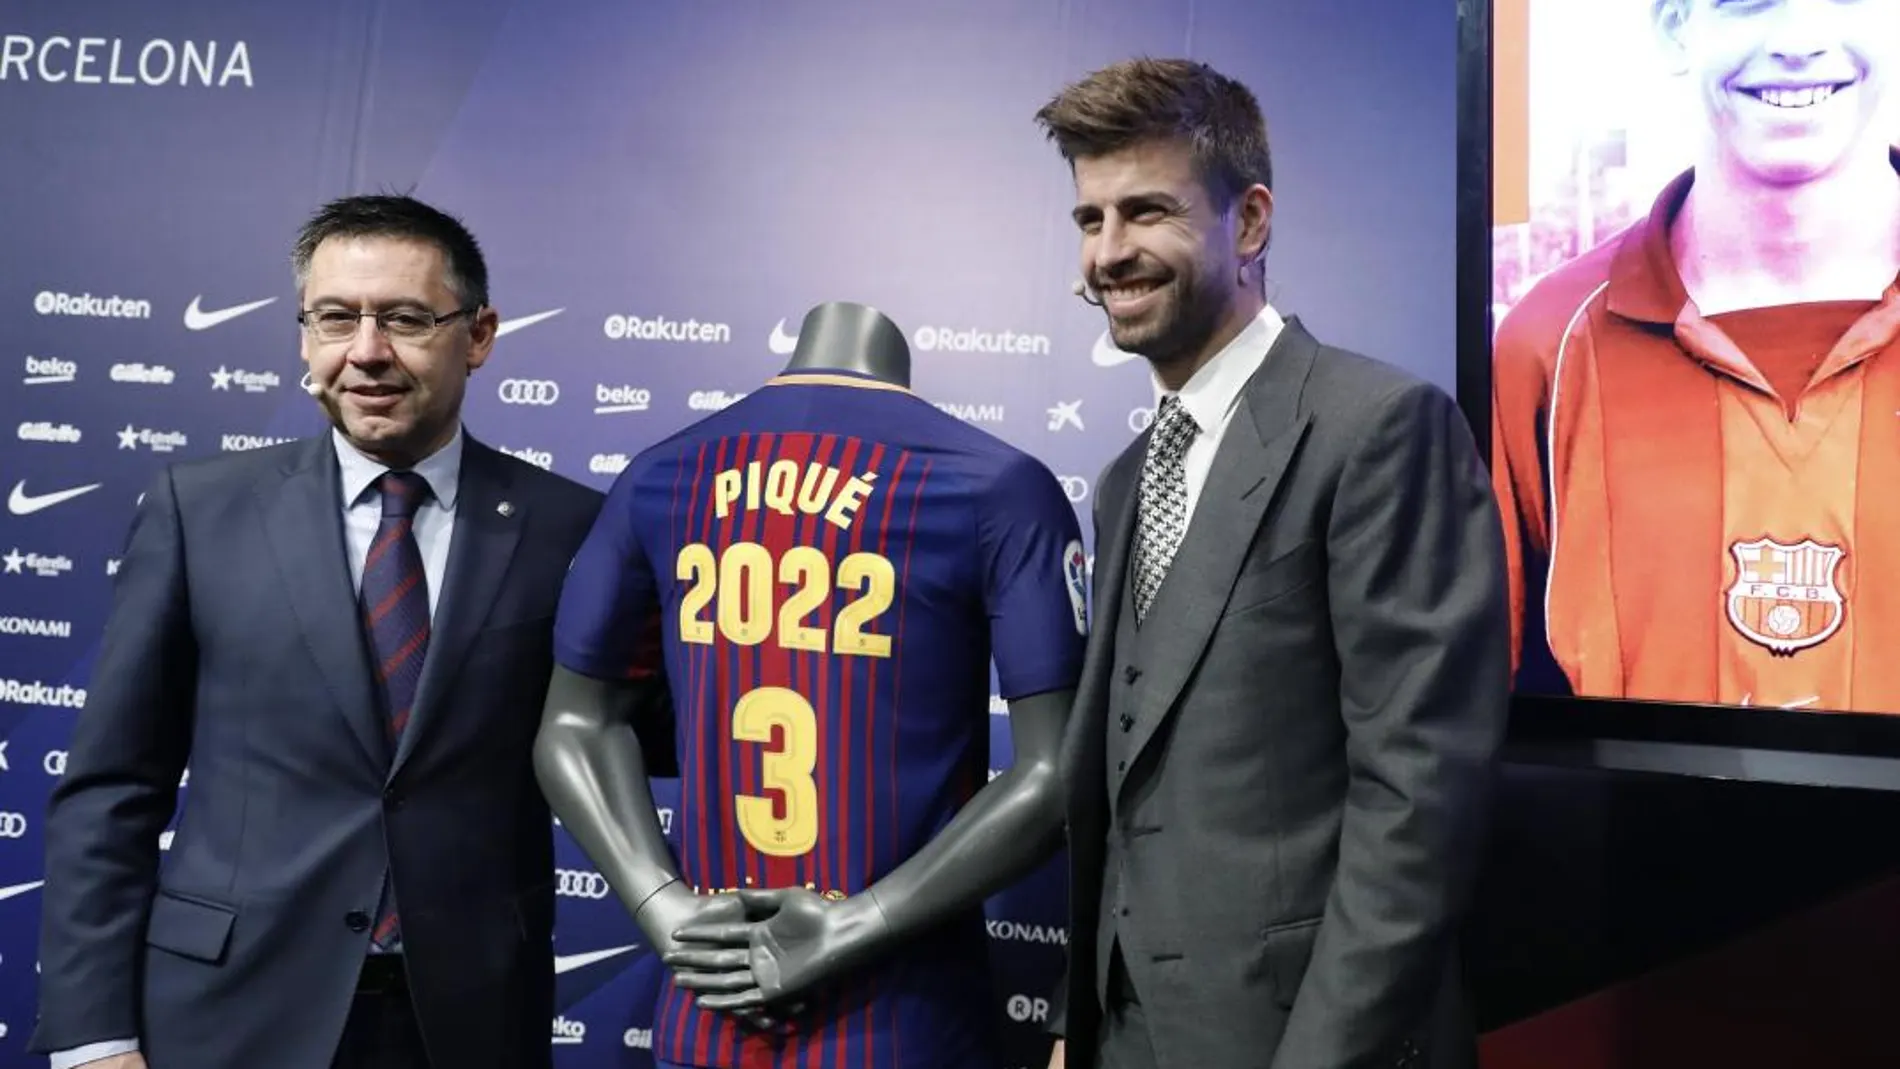 El central del FC Barcelona Gerard Piqué posa con el presidente del club, Josep María Bartomeu, tras firmar su ampliación de contrato con el club azulgrana, en el que permanecerá cuatro temporadas mas.